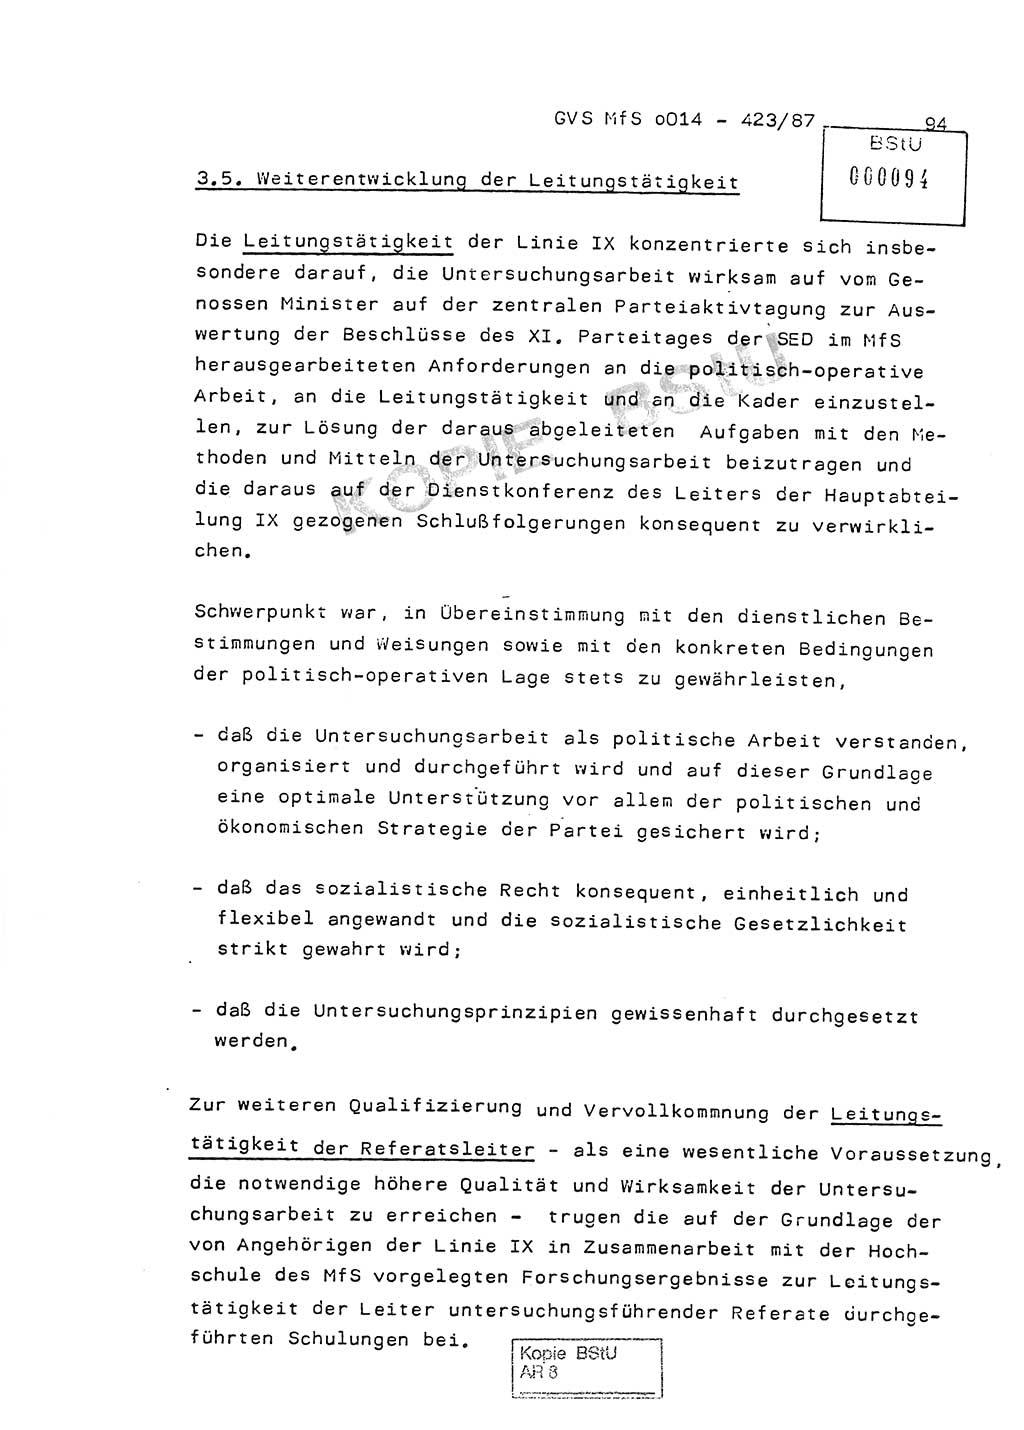 Jahresbericht der Hauptabteilung (HA) Ⅸ 1986, Einschätzung der Wirksamkeit der Untersuchungsarbeit im Jahre 1986, Ministerium für Staatssicherheit (MfS) der Deutschen Demokratischen Republik (DDR), Hauptabteilung Ⅸ, Geheime Verschlußsache (GVS) o014-423/87, Berlin 1987, Seite 94 (Einsch. MfS DDR HA Ⅸ GVS o014-423/87 1986, S. 94)